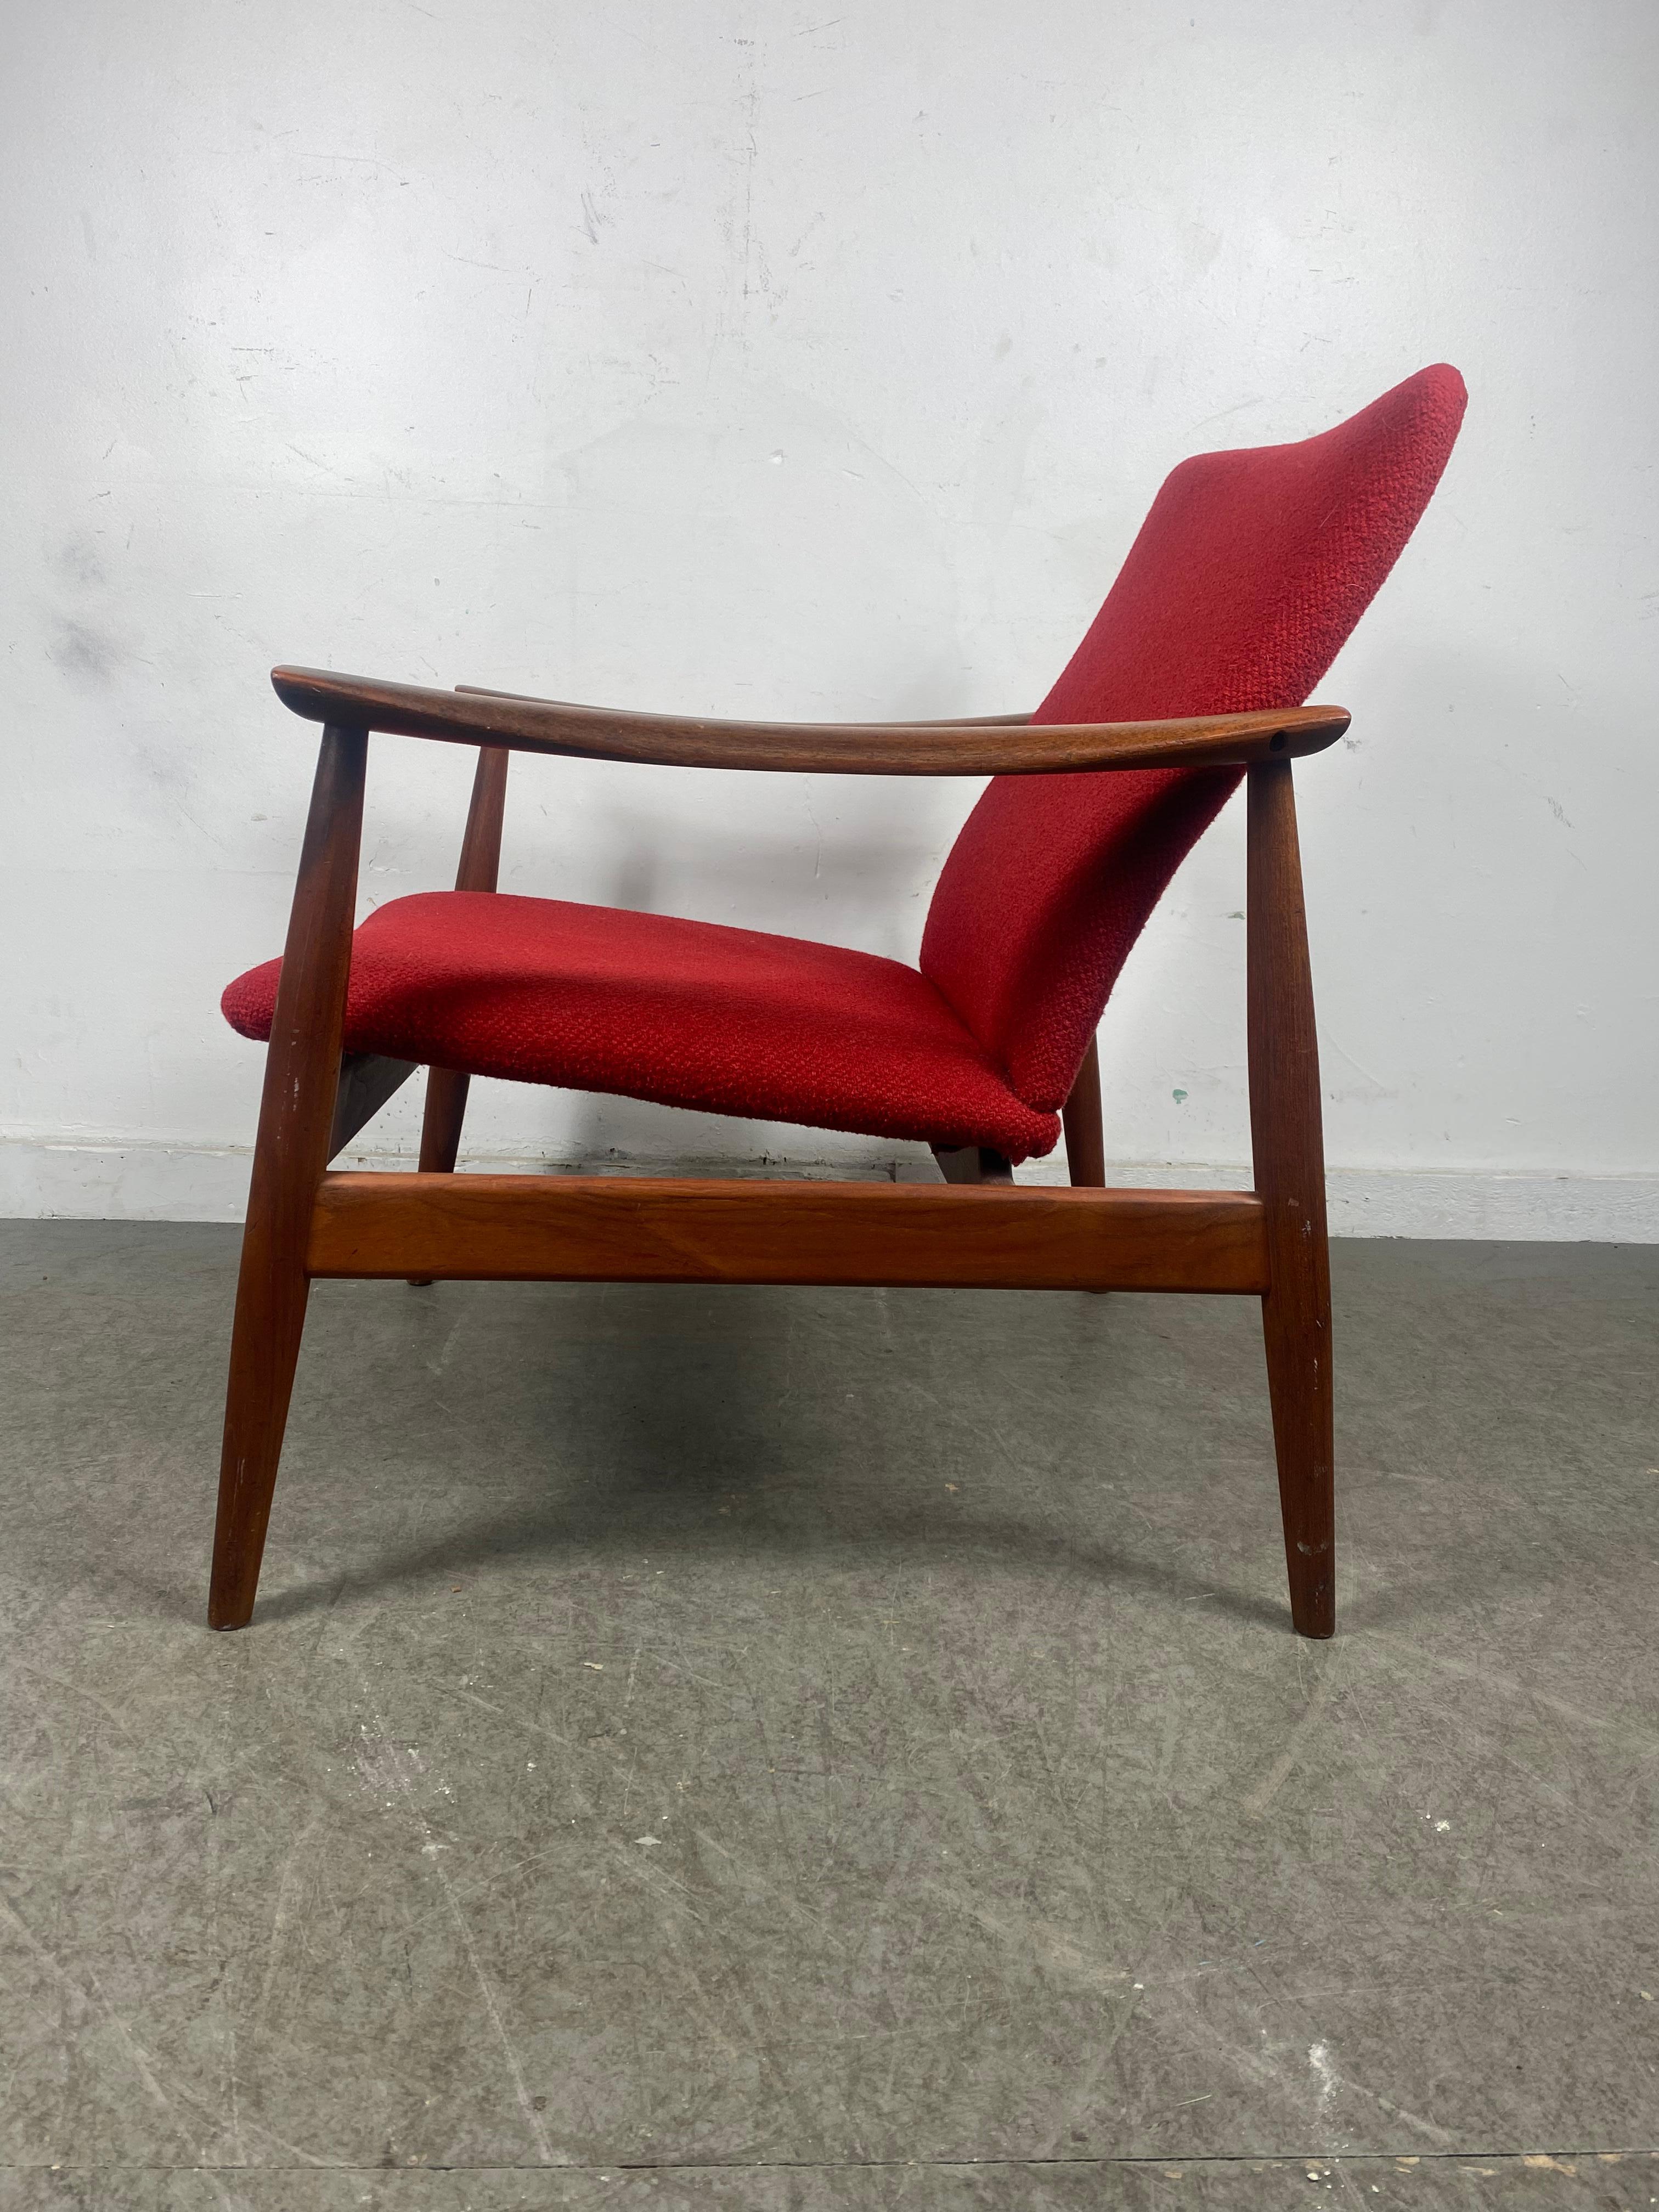 Rare easy chair model 138 designed by Finn Juhl. Produced by France & Son in Denmark. Retains original John Stuart badge, Wonderfull original condition.